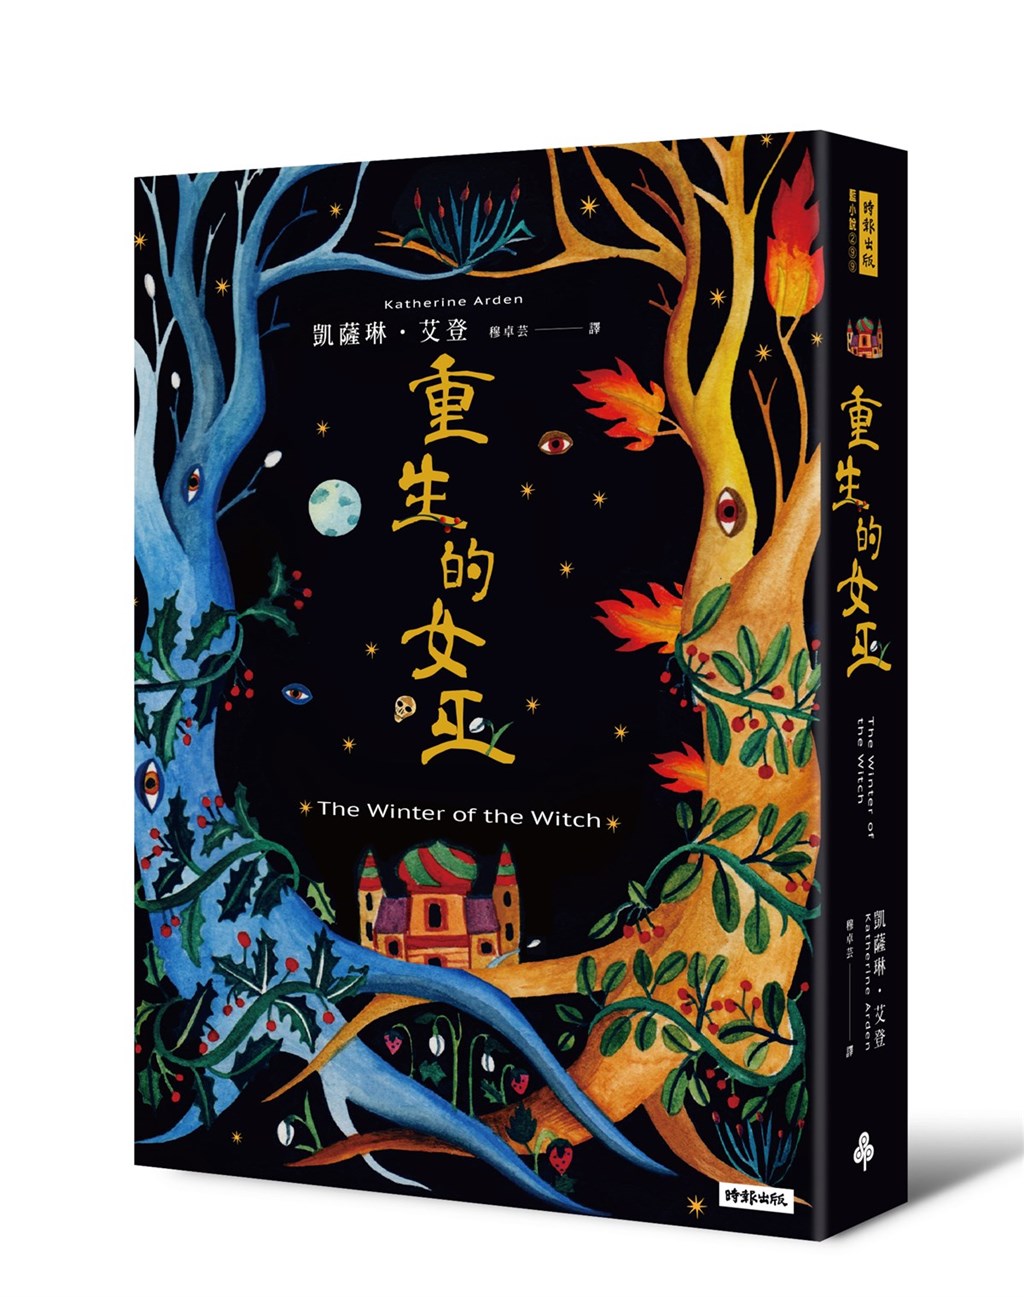 入圍雨果獎系列作重生的女巫跳脫奇幻小說公式 文化 中央社cna